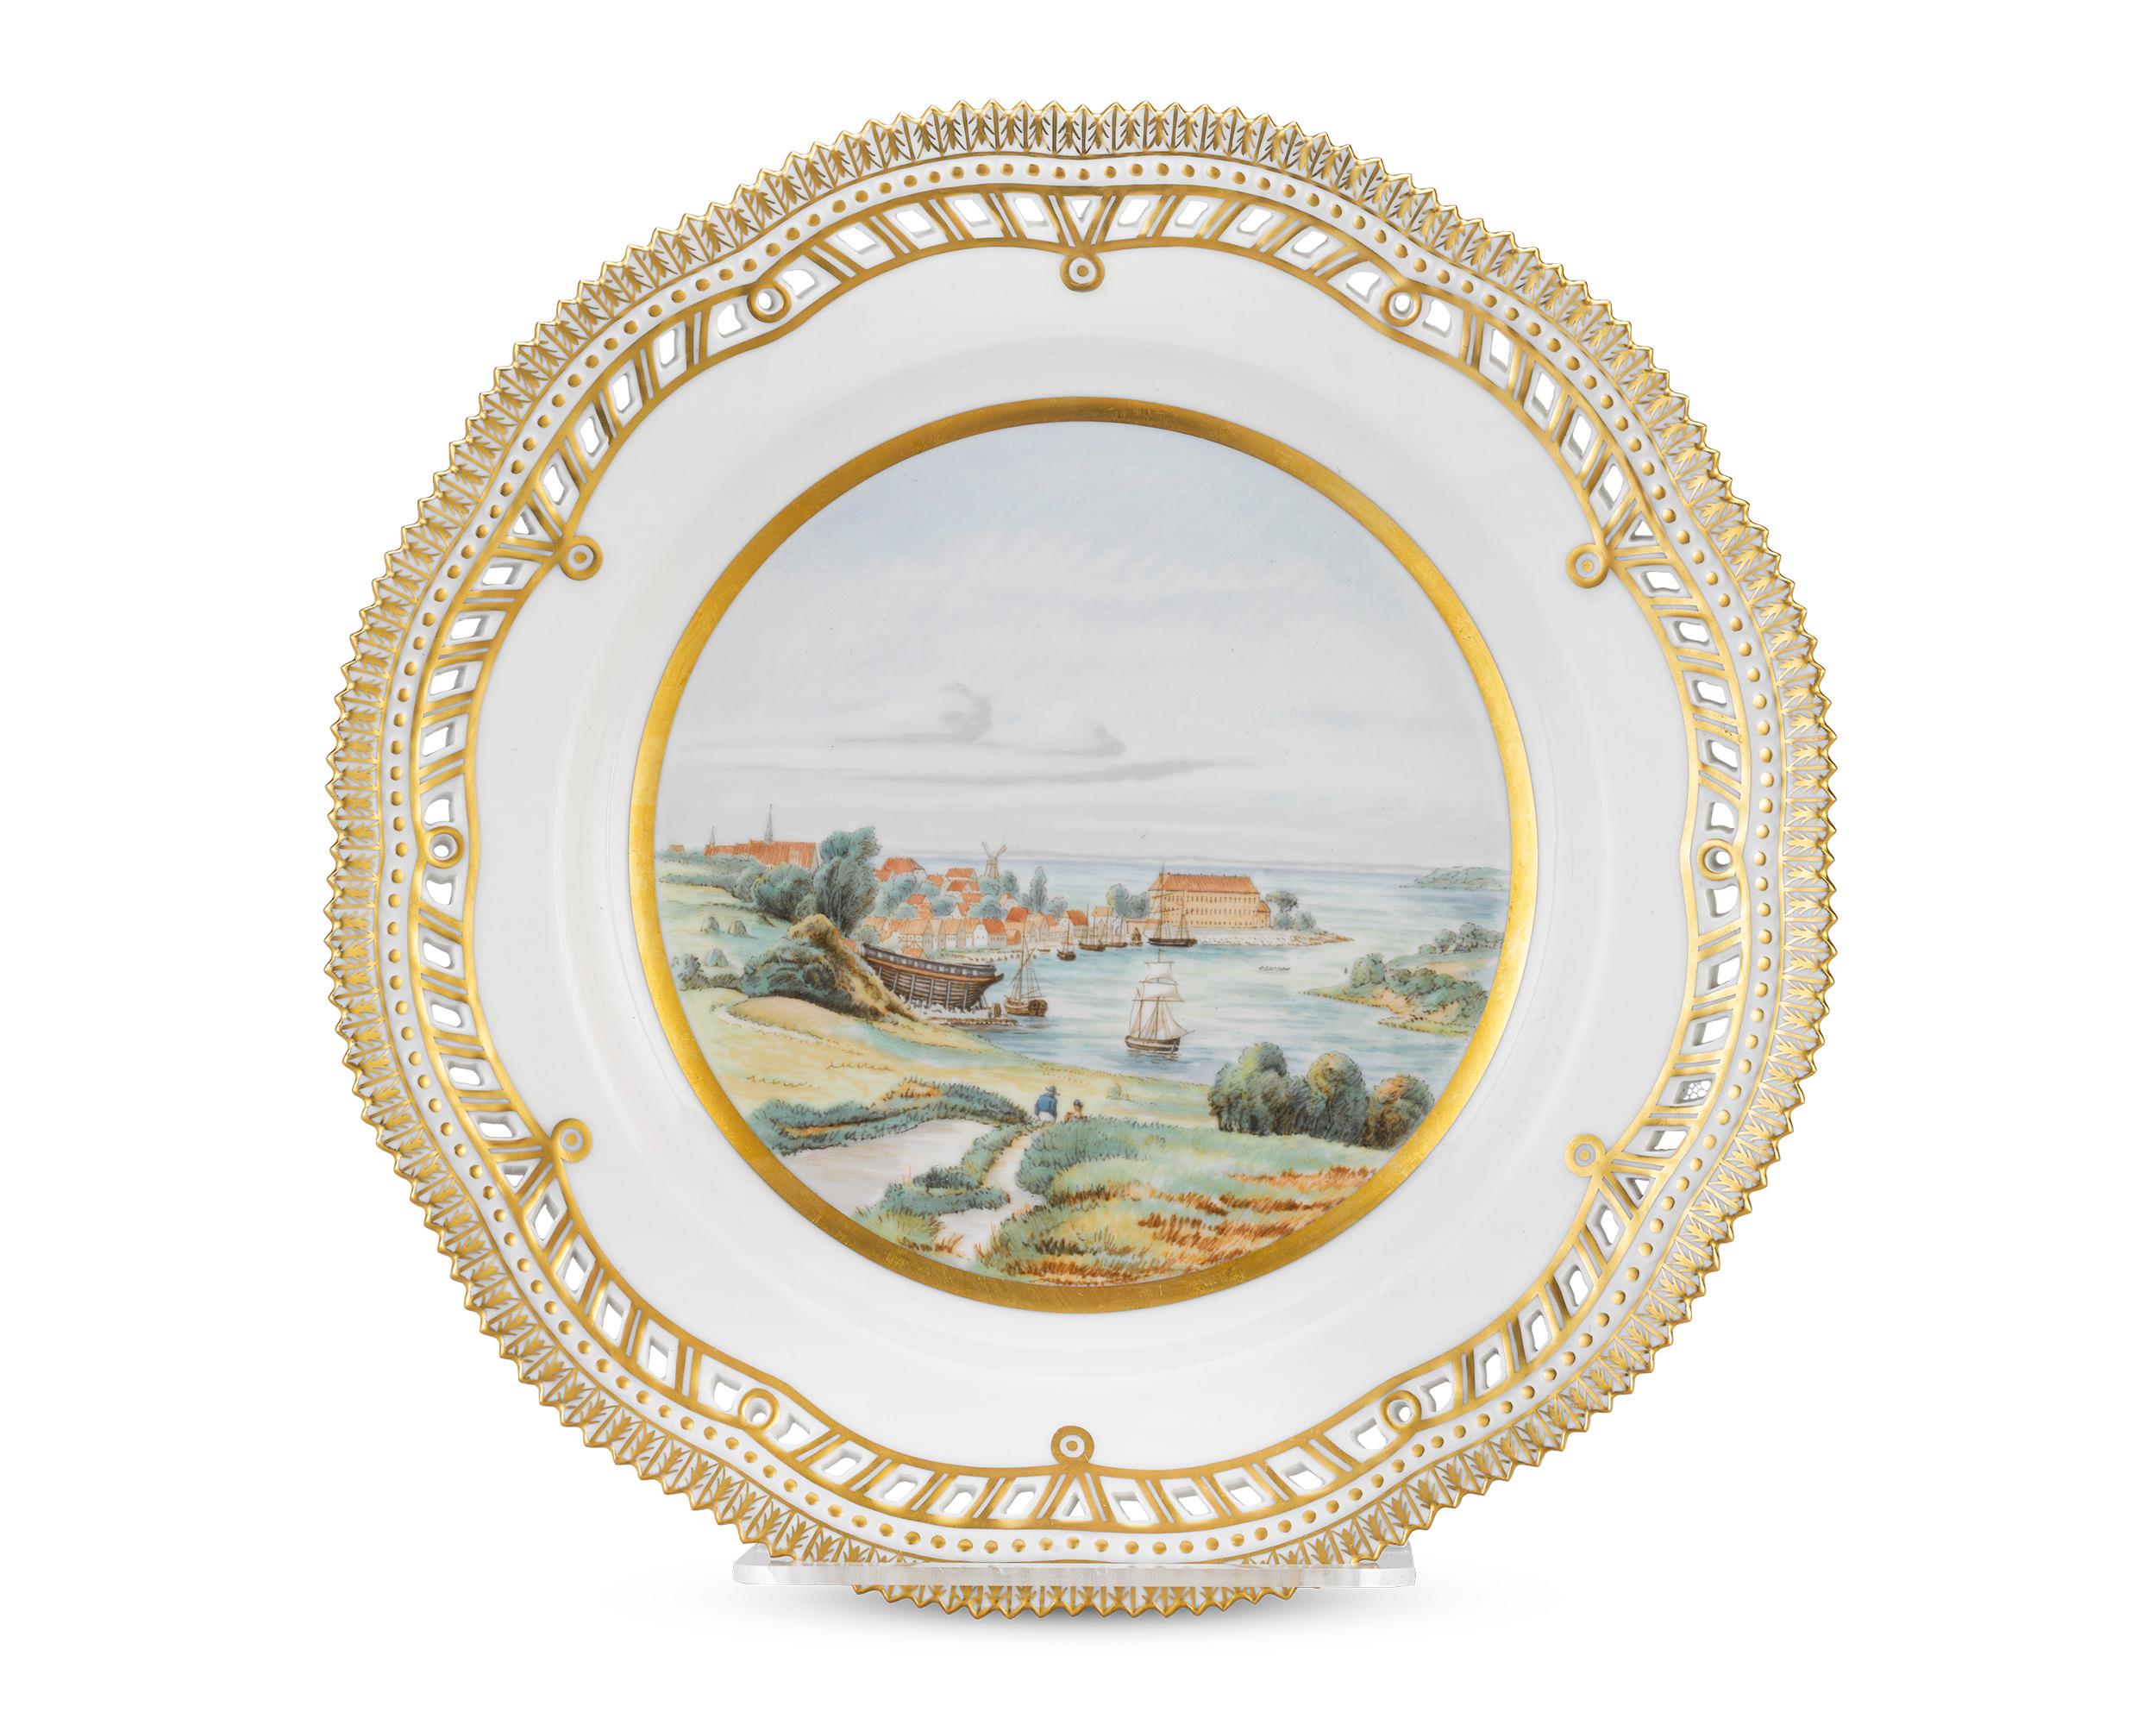 Dieser Teller der berühmten Porzellanmanufaktur Royal Copenhagen zeigt eine wunderbar detaillierte Seelandschaft mit Schiffen und einem malerischen dänischen Dorf, das das Schloss Sonderborg umgibt. Zusätzliche vergoldete Verzierungen und ein zart